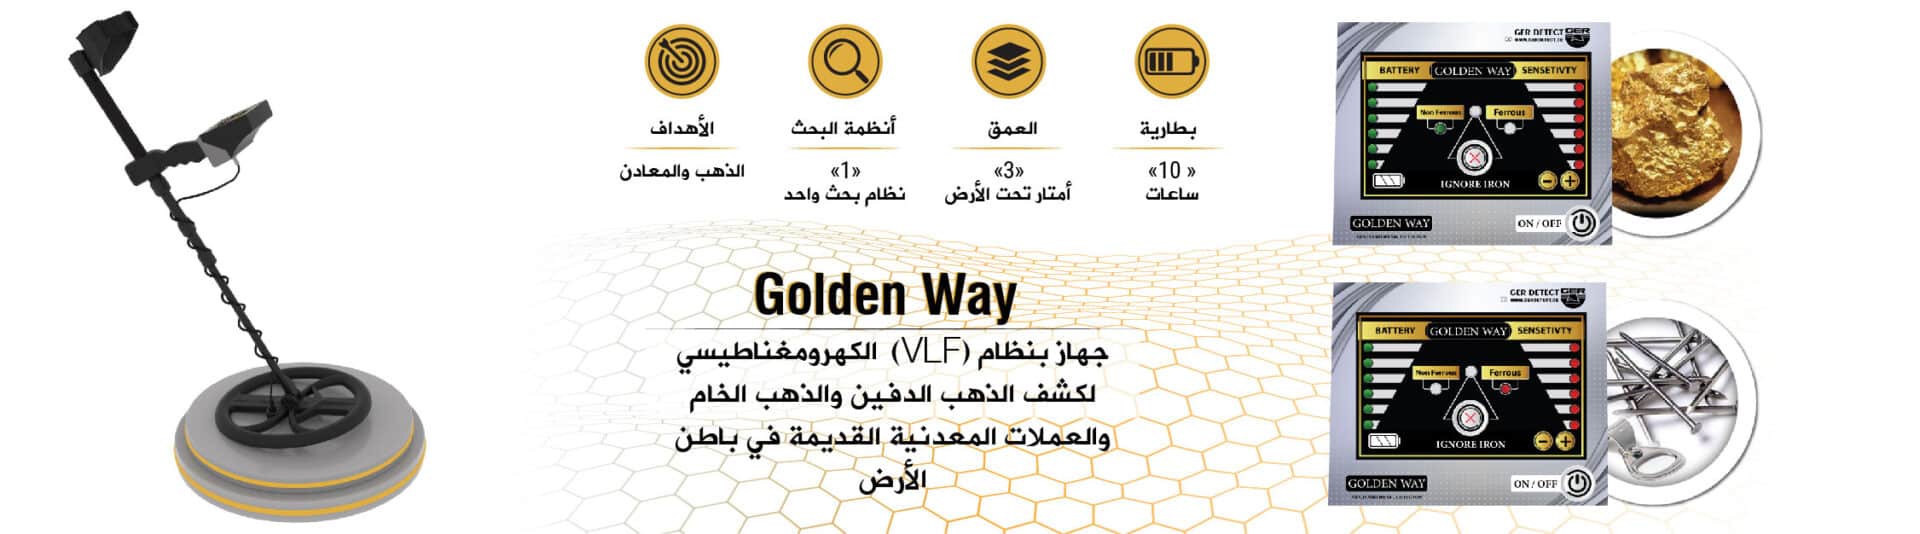 جولدن واي جهاز بنظام الكهرومغناطيسي (VLF) لكشف الذهب الدفين والذهب الخام